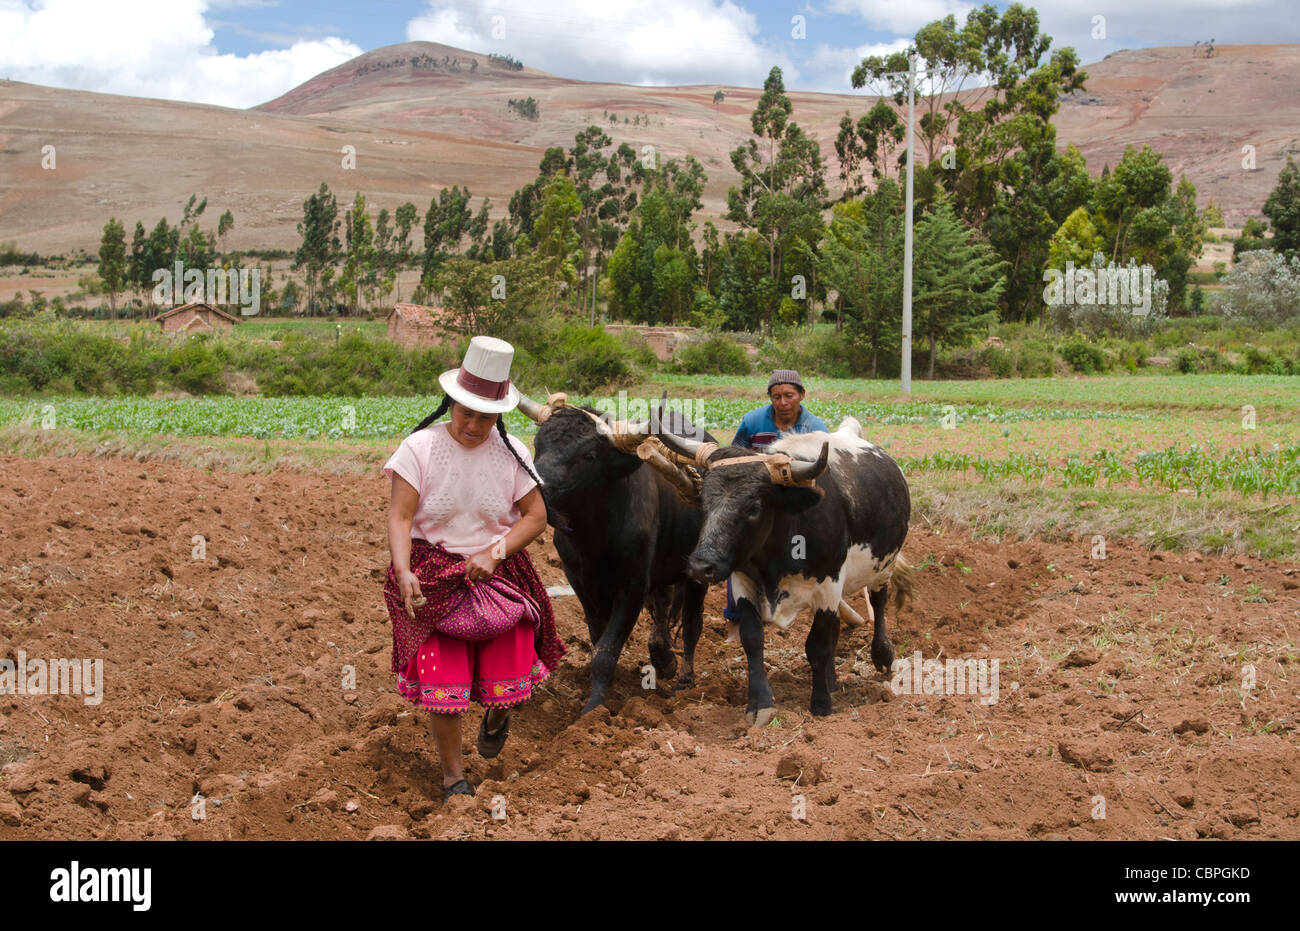 Images de l'agriculture travaille avec deux boeufs dans l'exploitation dans la petite ville de Chinchero Pérou Amérique du Sud Banque D'Images